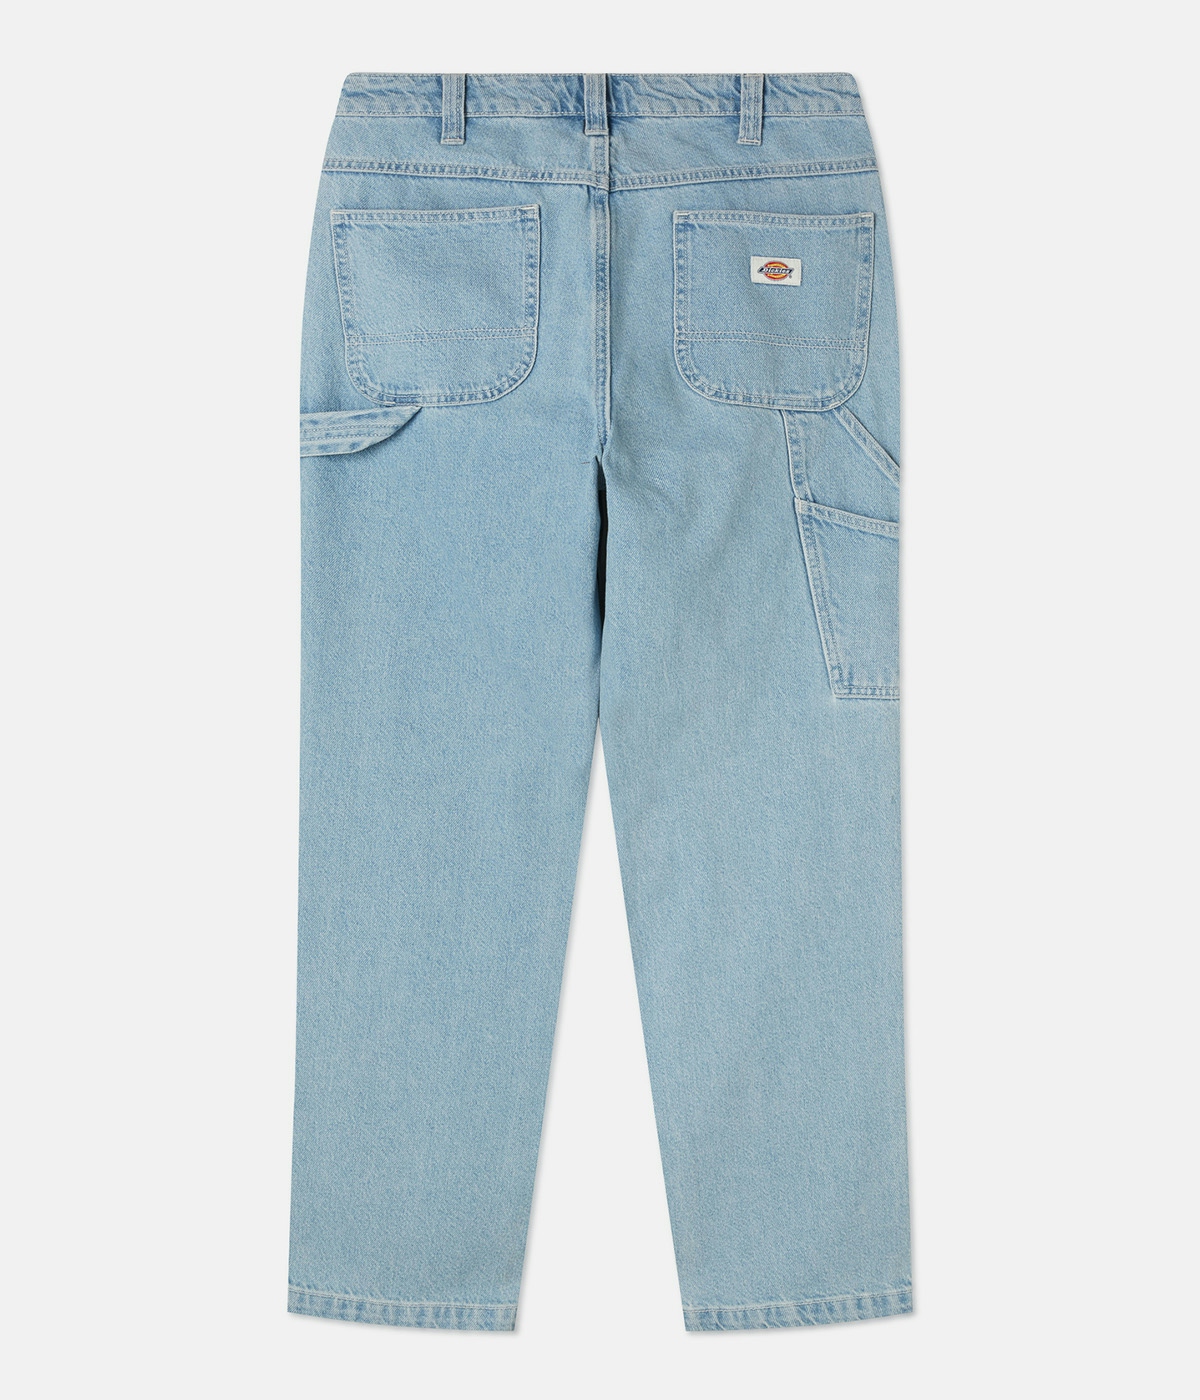 Dickies Ellendale Denim Jeans Vintage Aged Blue 2